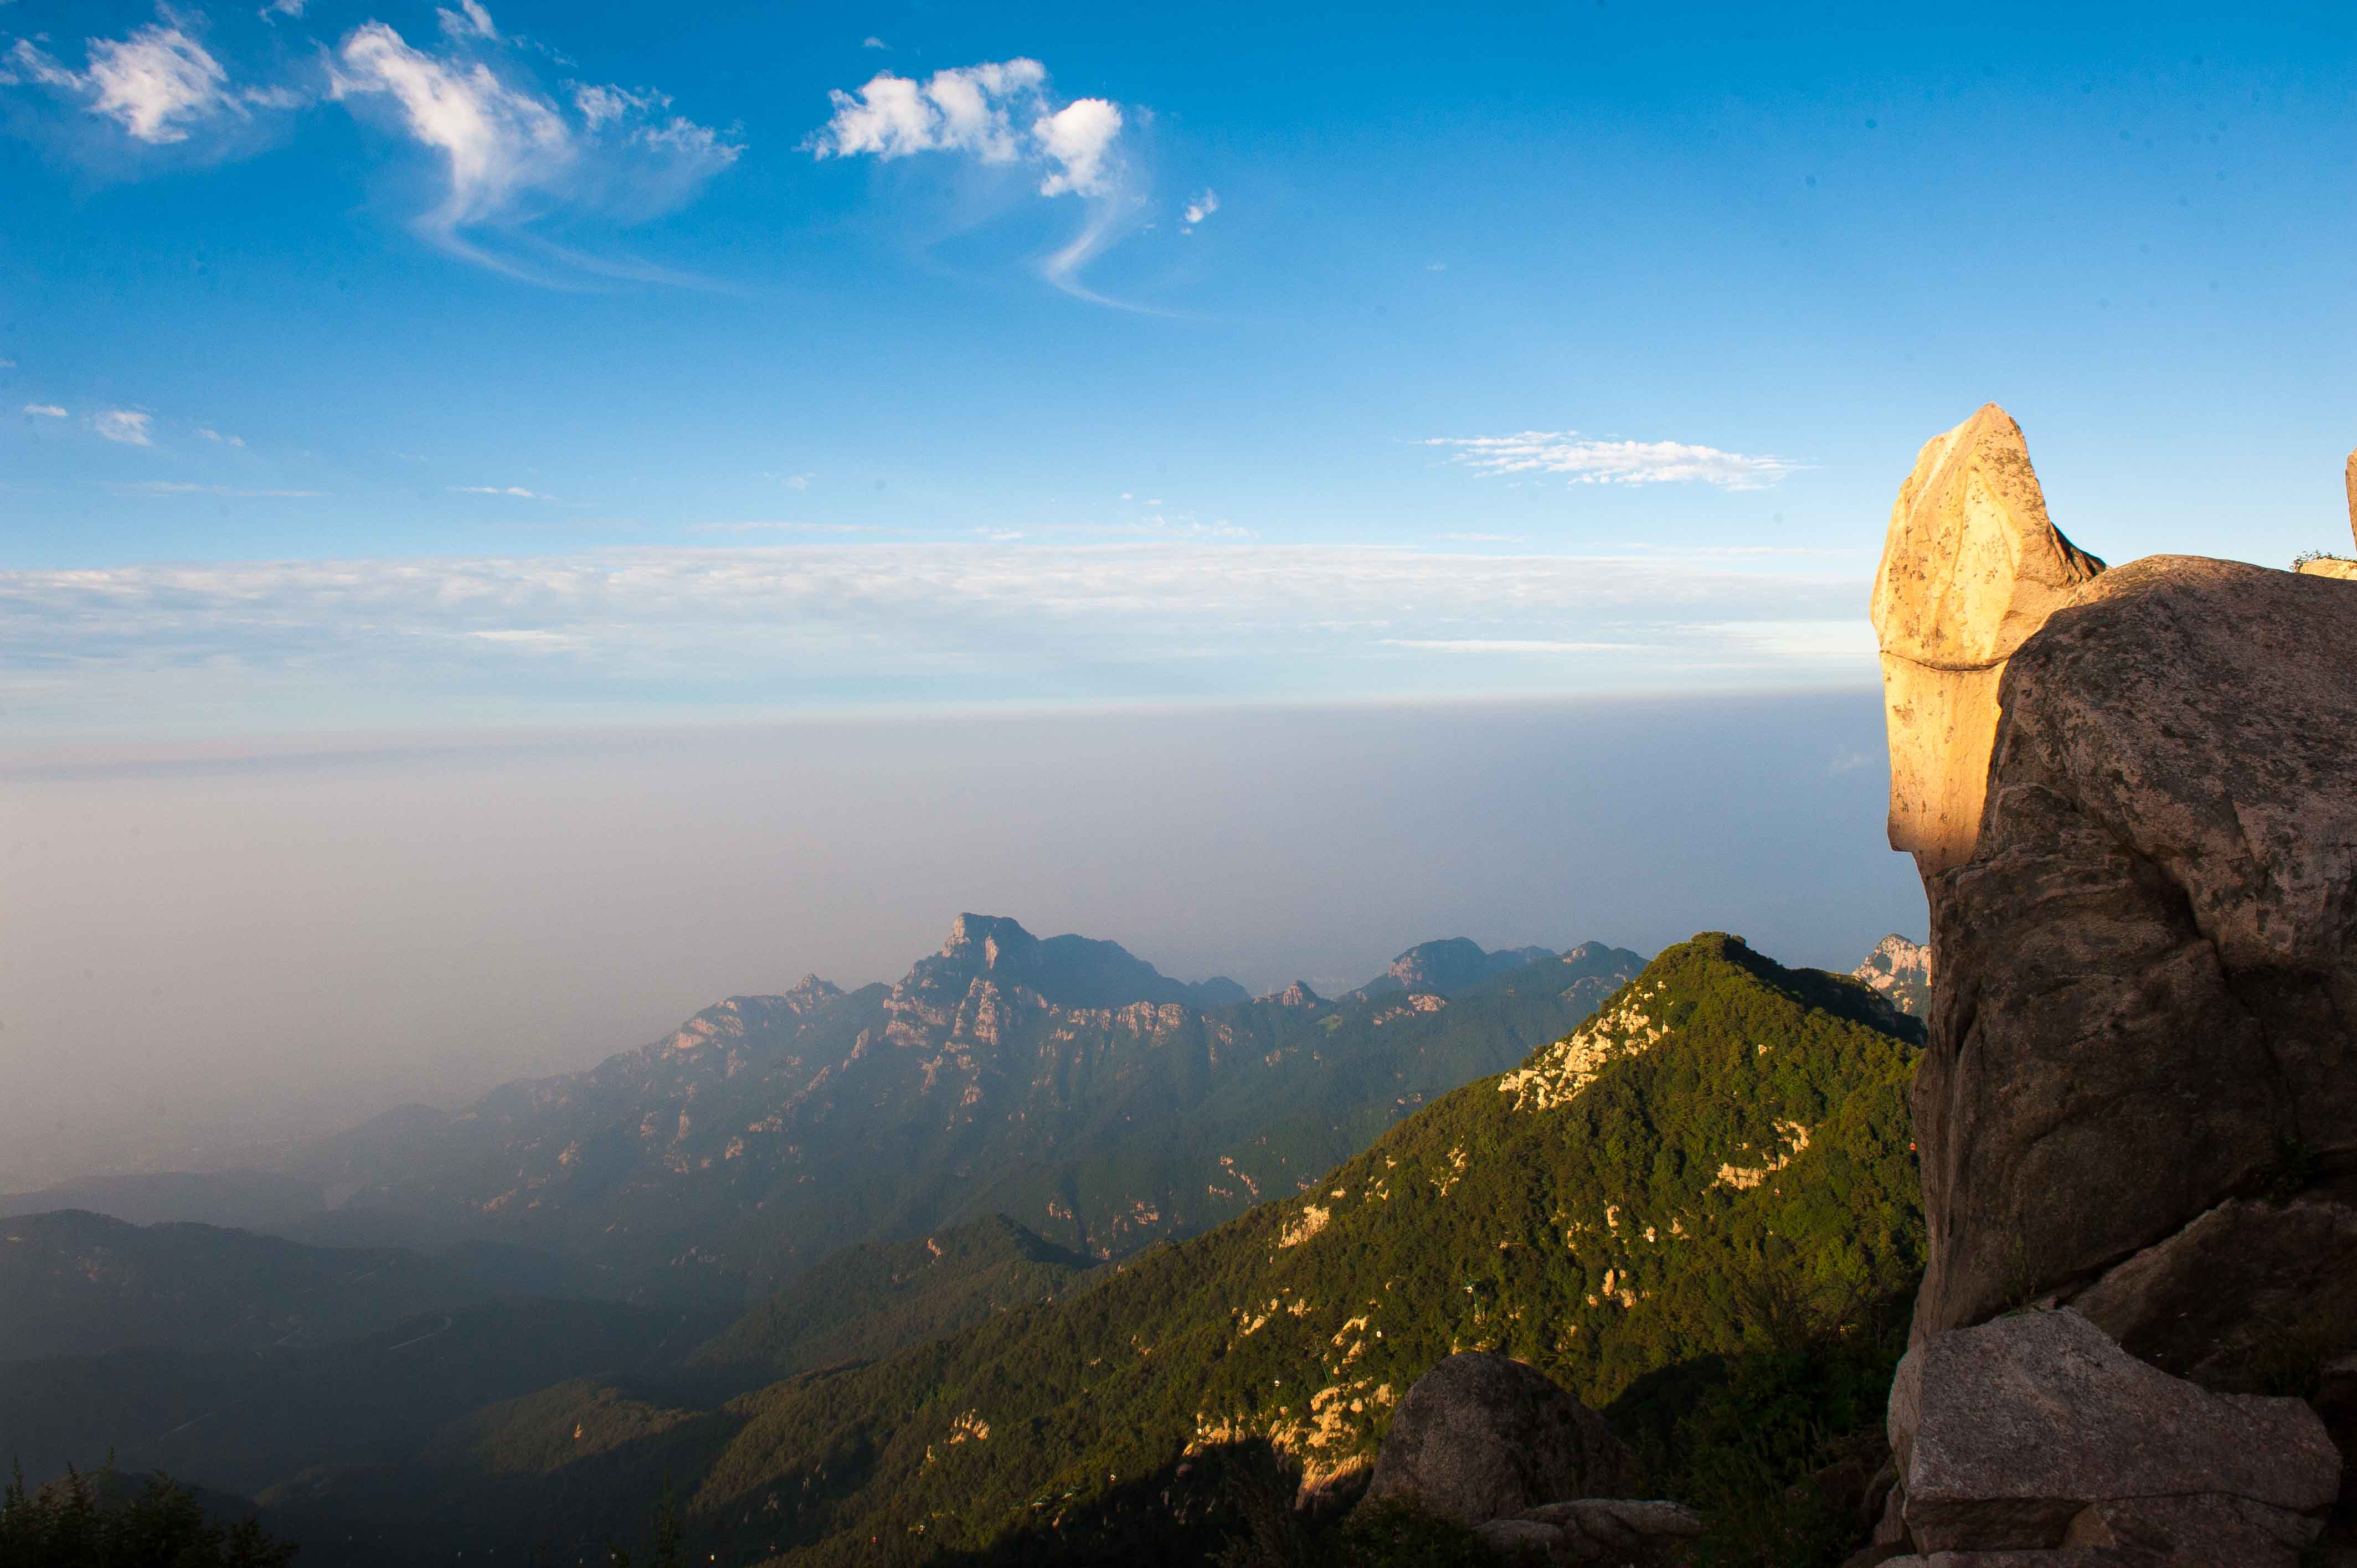 泰山五岳之首以雄奇景色与深厚人文著称,世界双重遗产的三个看点